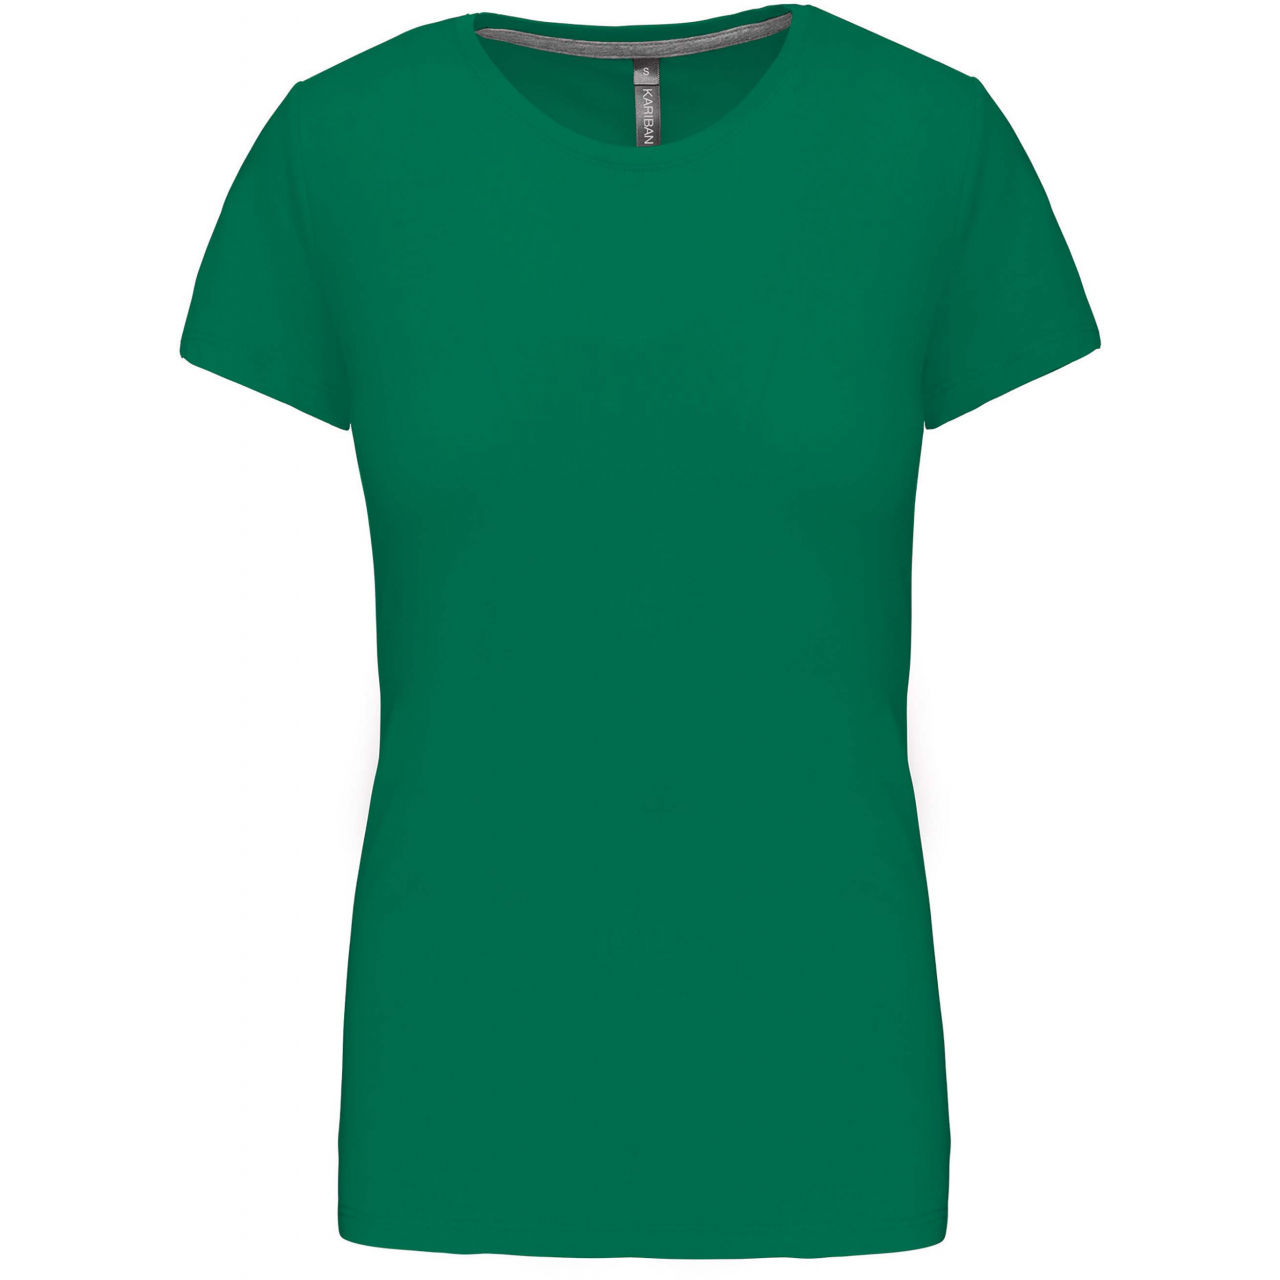 Dámské tričko Kariban s krátkým rukávem - zelené, M